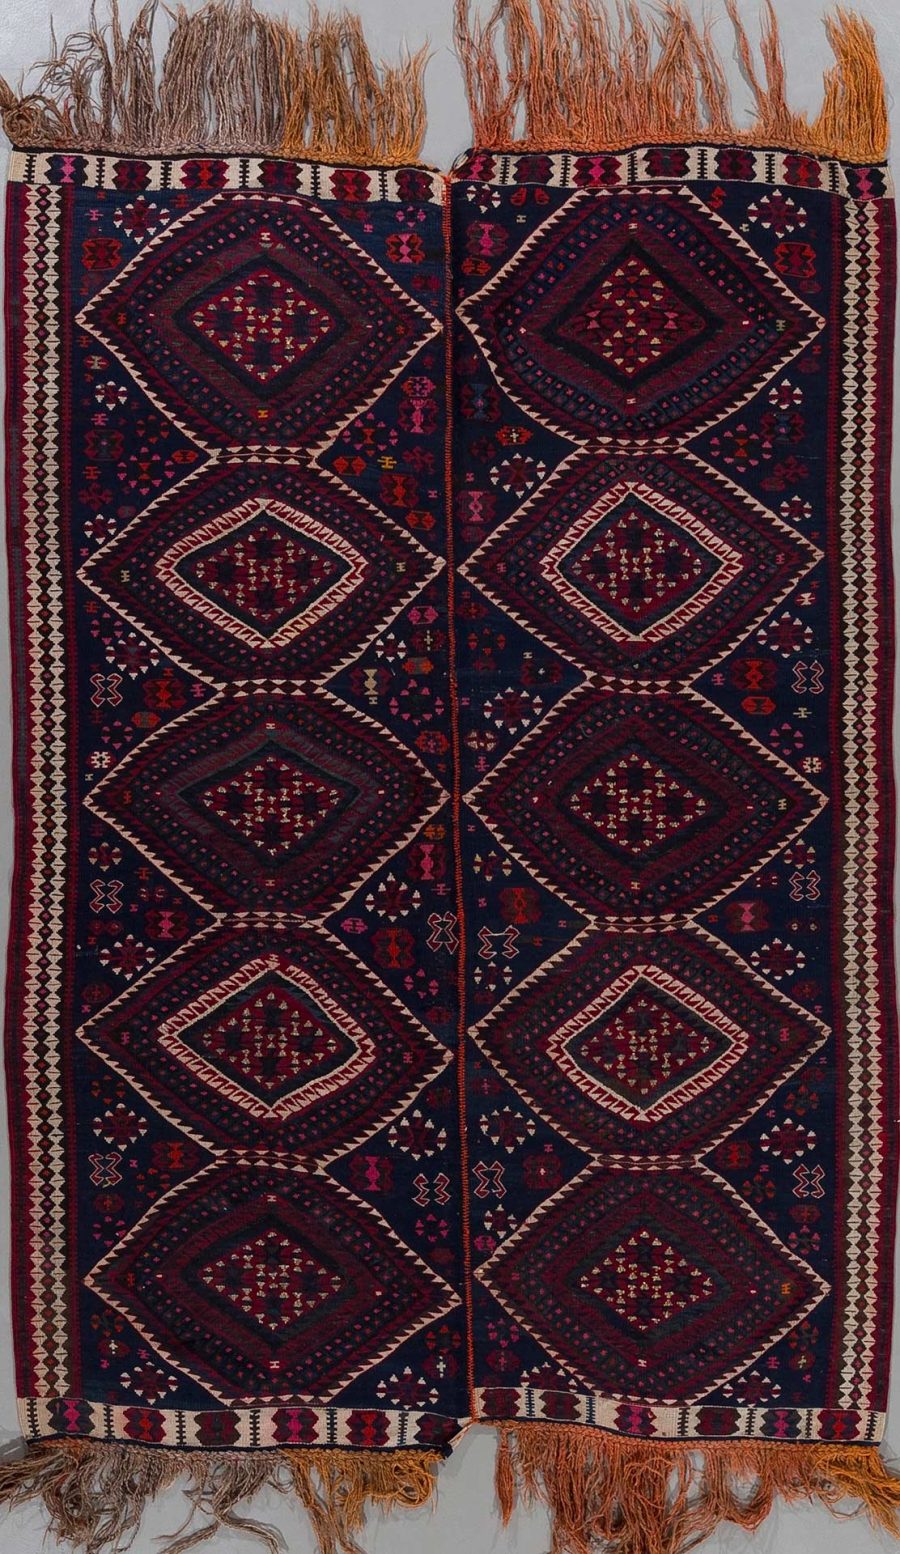 Traditioneller handgewebter Teppich mit symmetrischen geometrischen Mustern in Dunkelblau, Rot und Beige, mit Fransen an den Enden.